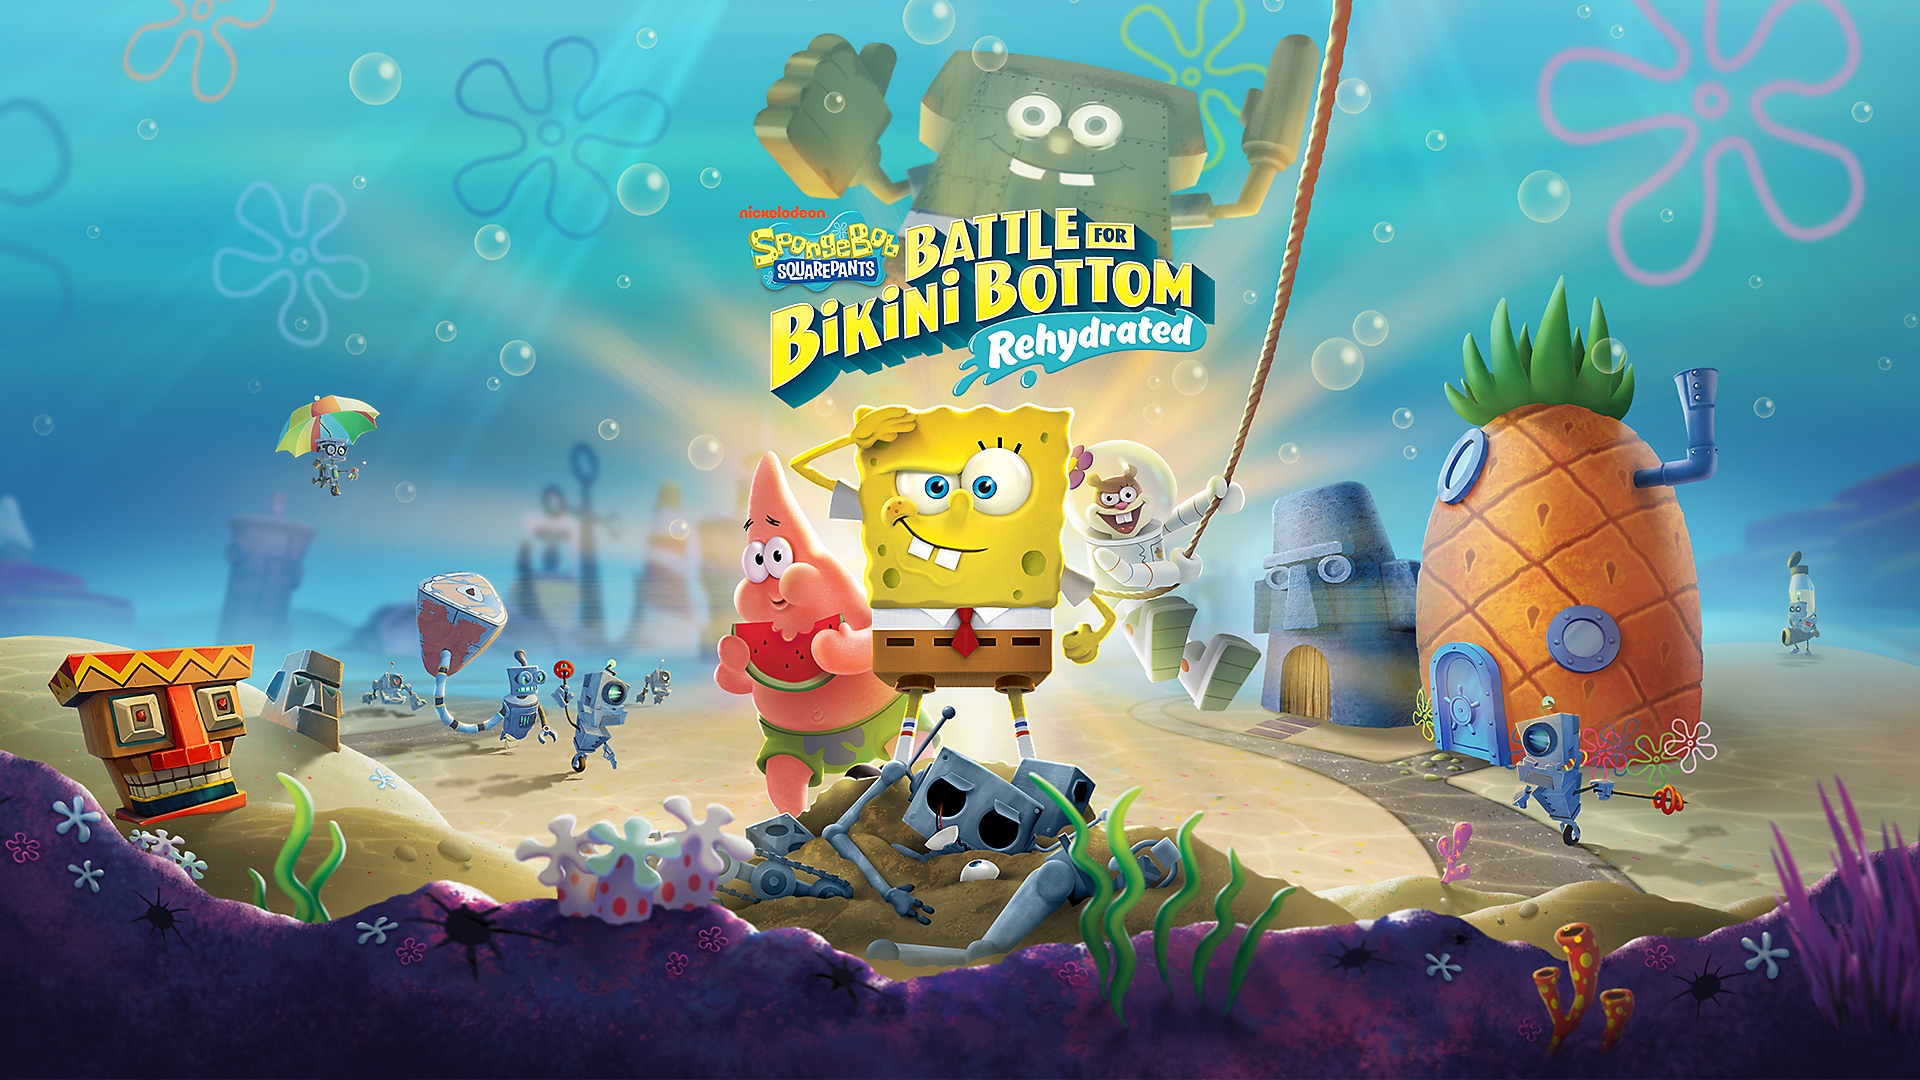 PS4 için SpongeBob SquarePants: Battle for Bikini Bottom Rehydrated’ta Bikini Bottom’daki Patrick bir ananas yerken Sünger Bob da selam veriyor